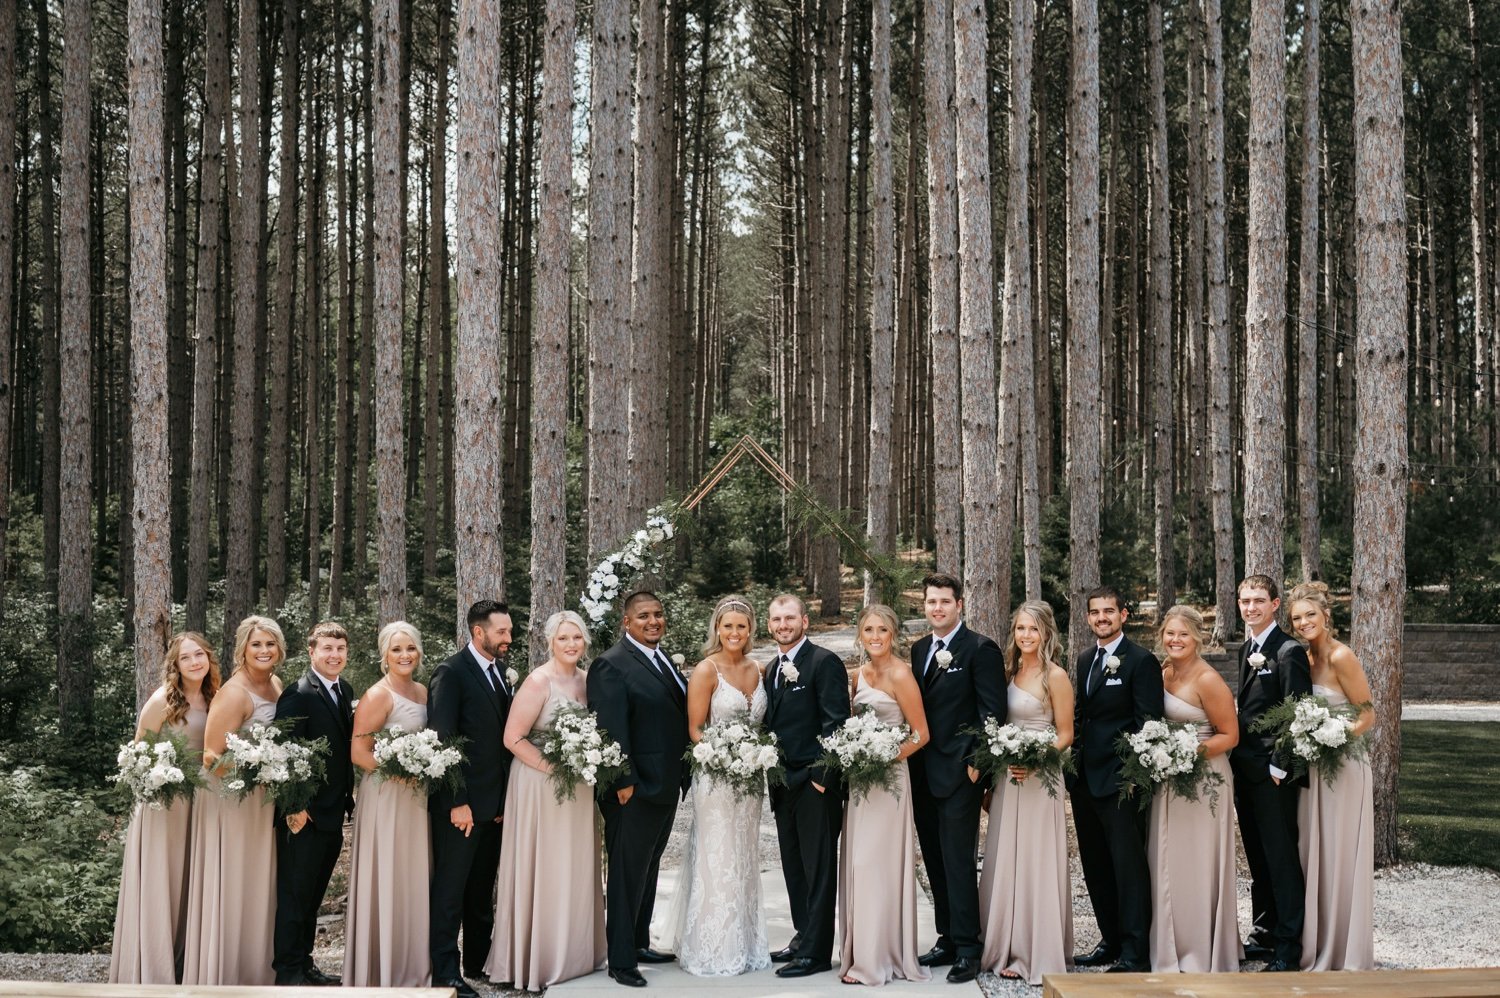 26_KFF_2055_wedding party photo in pine trees.jpg